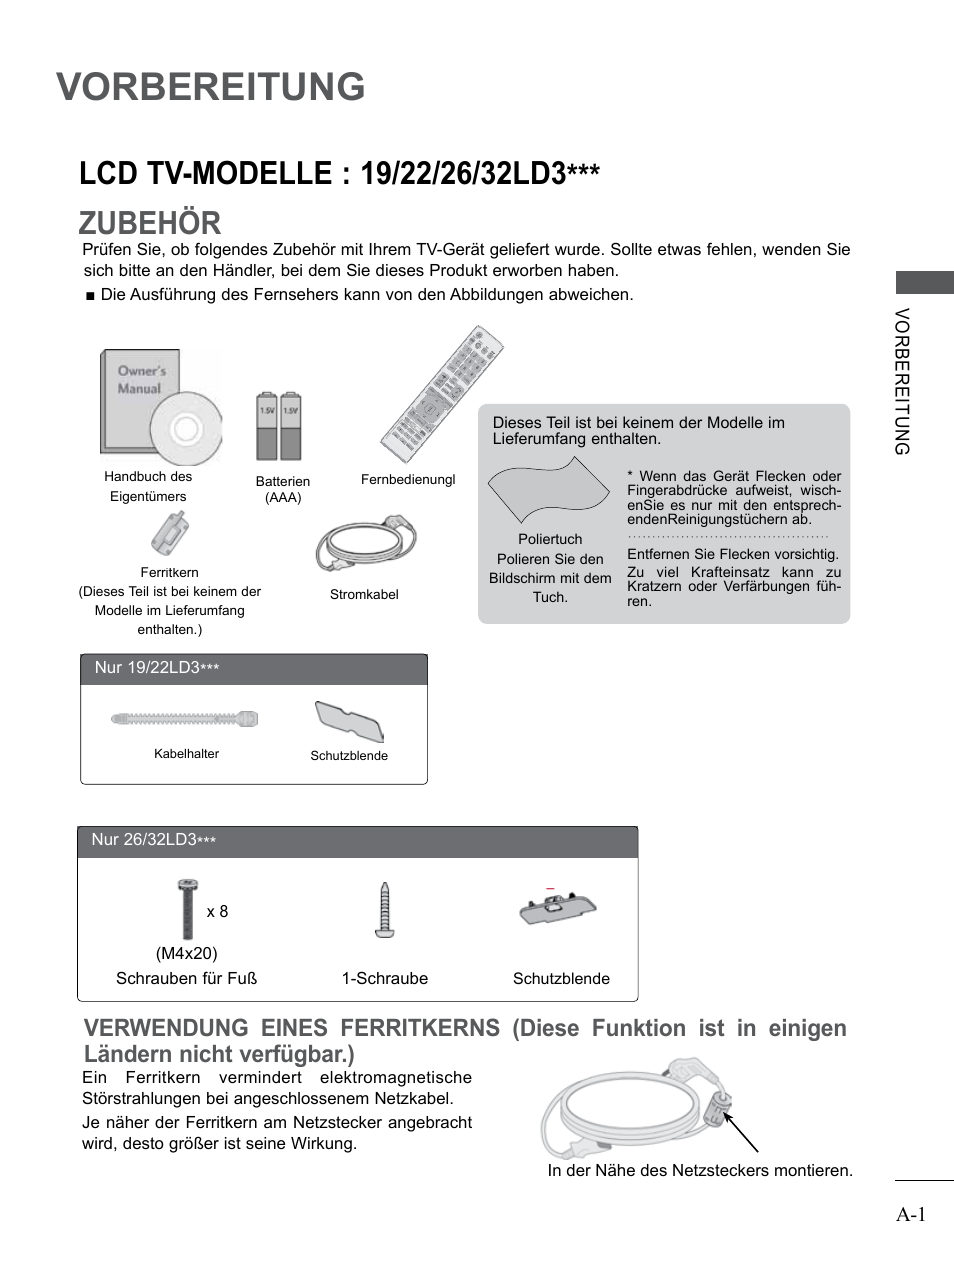 Vorbereitung, Lcd tv-modelle : 19/22/26/32ld3, Lcd tv-modelle : 19/22/26/32ld3*** ........a-1 | LG 26LD350 Benutzerhandbuch | Seite 5 / 206